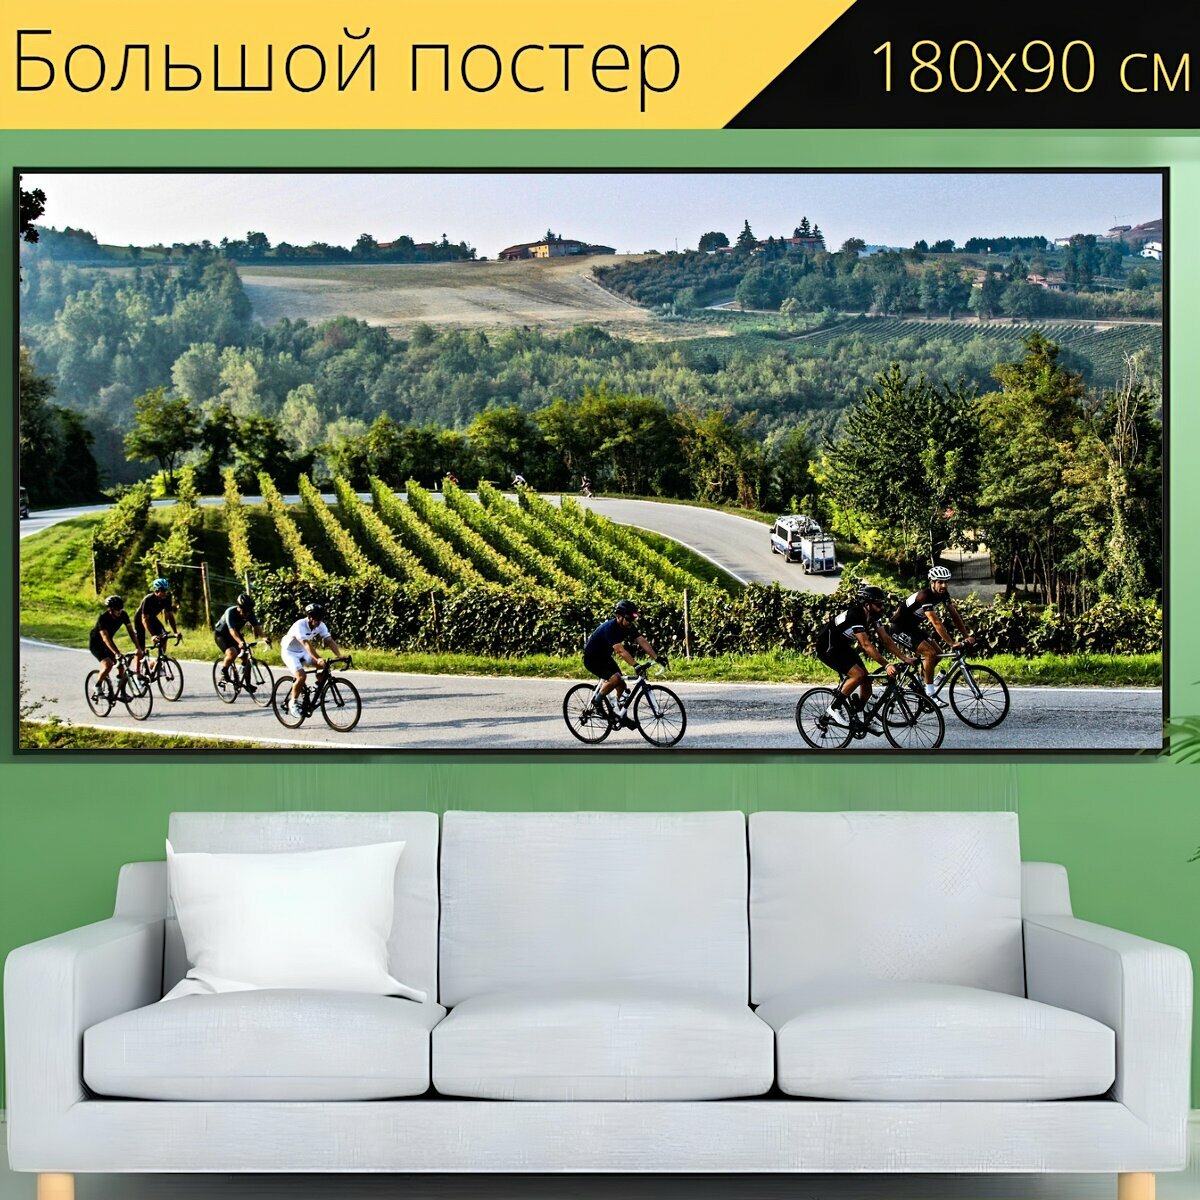 Большой постер "Велосипеды, кататься на велосипеде, велосипедисты" 180 x 90 см. для интерьера